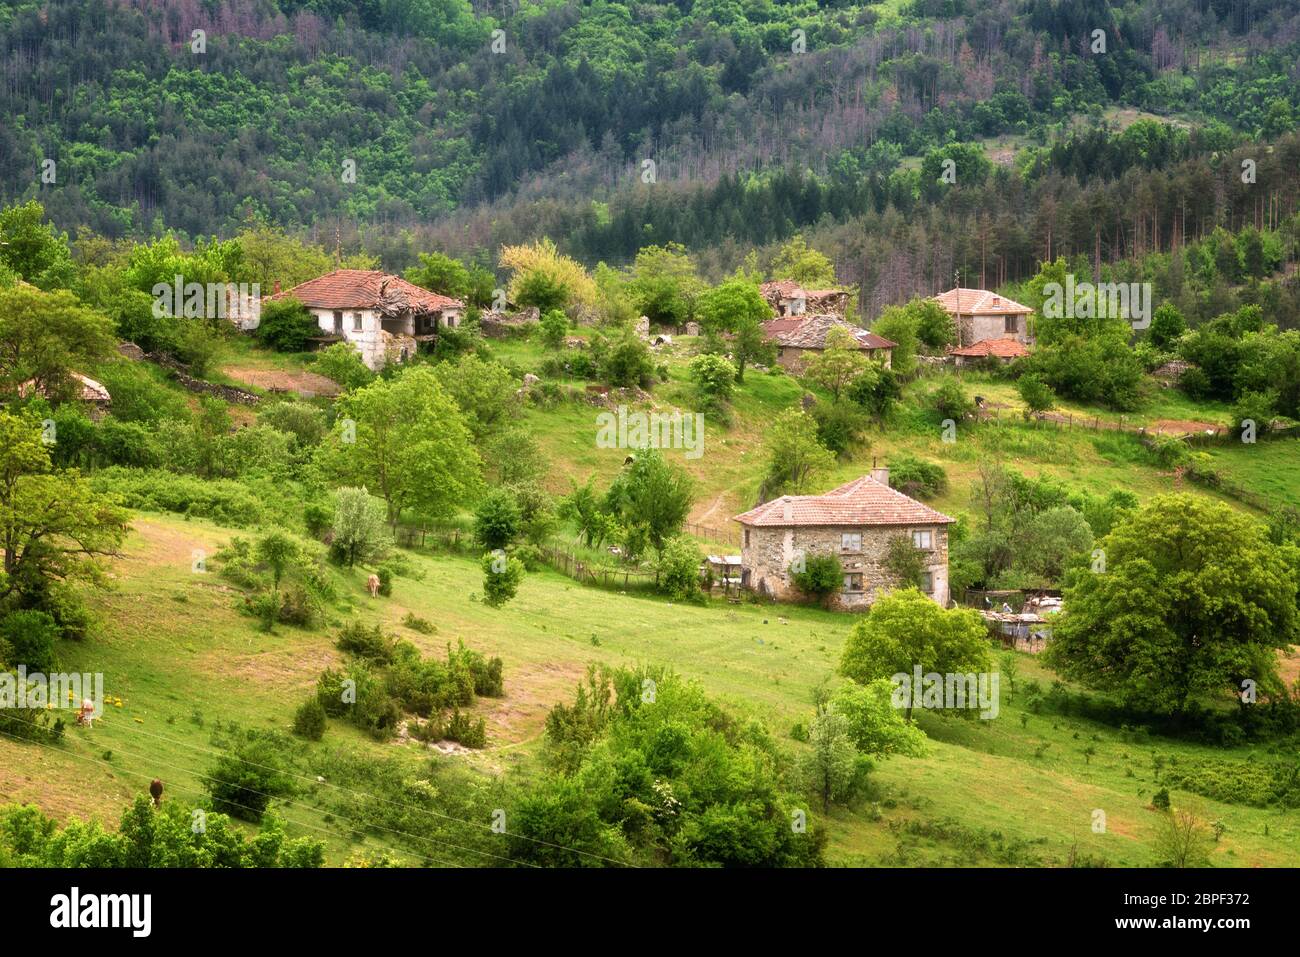 Der Frühling kommt... Erstaunliche Frühling Blick mit einem kleinen Dorf in Rhodopi Gebirge, Bulgarien. Herrliche Landschaft, grüne Felder, kleine Häuser. Stockfoto